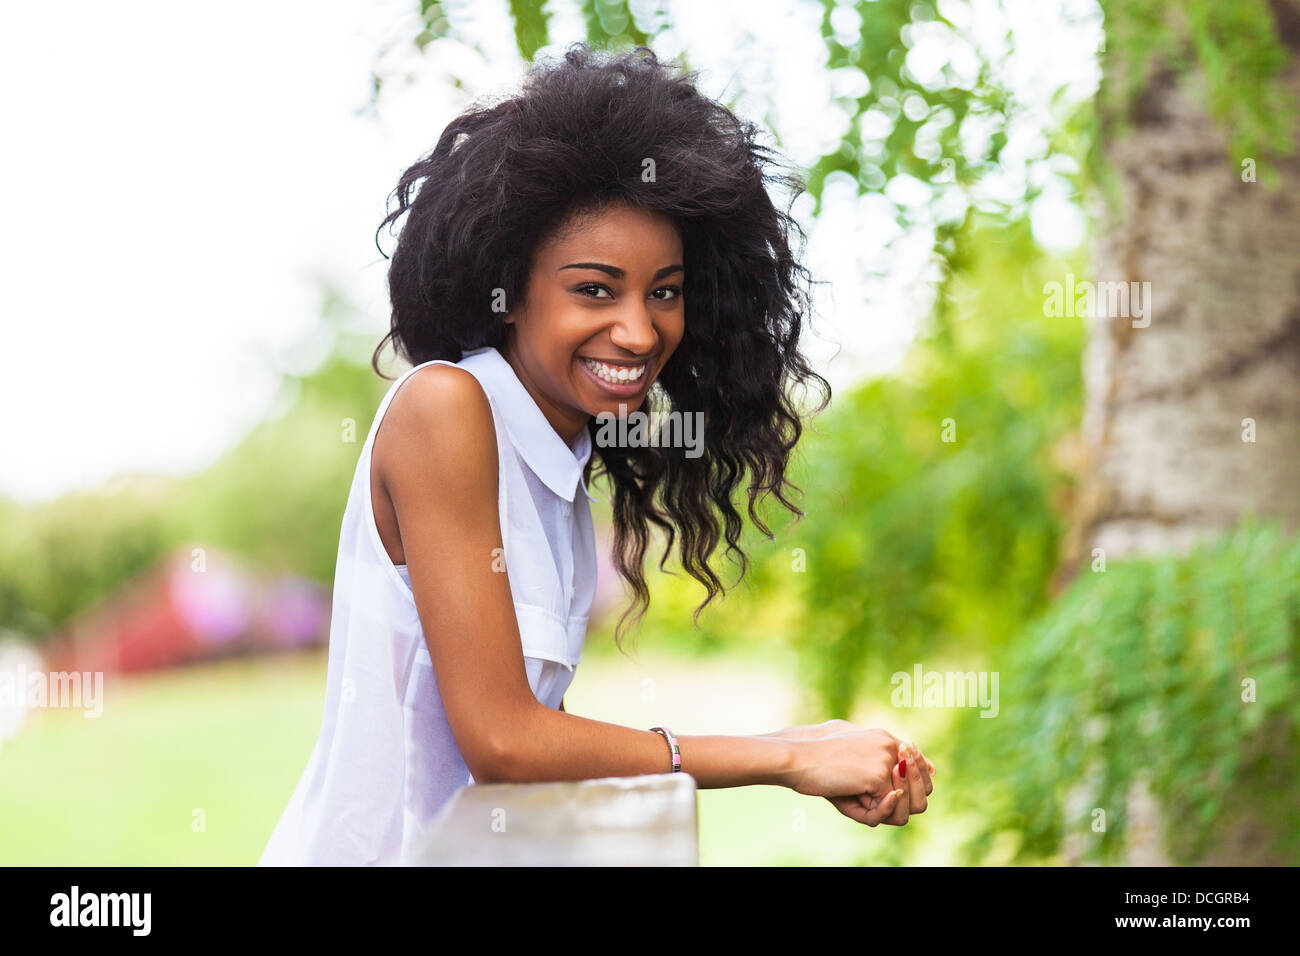 Outdoor-Porträt eines lächelnden schwarzen Mädchens - afrikanische Bevölkerung Stockfoto